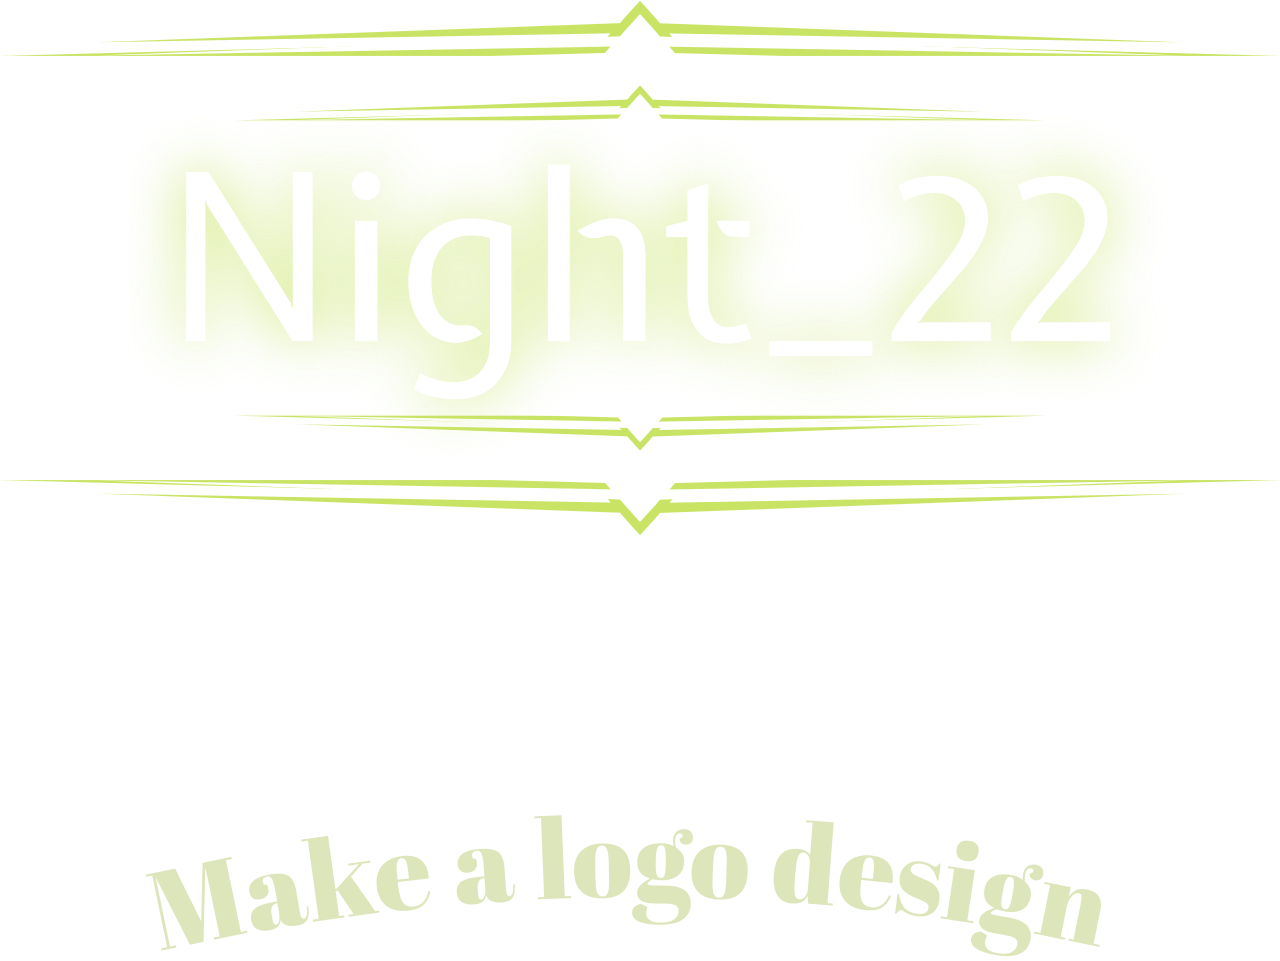 Night_22's logo